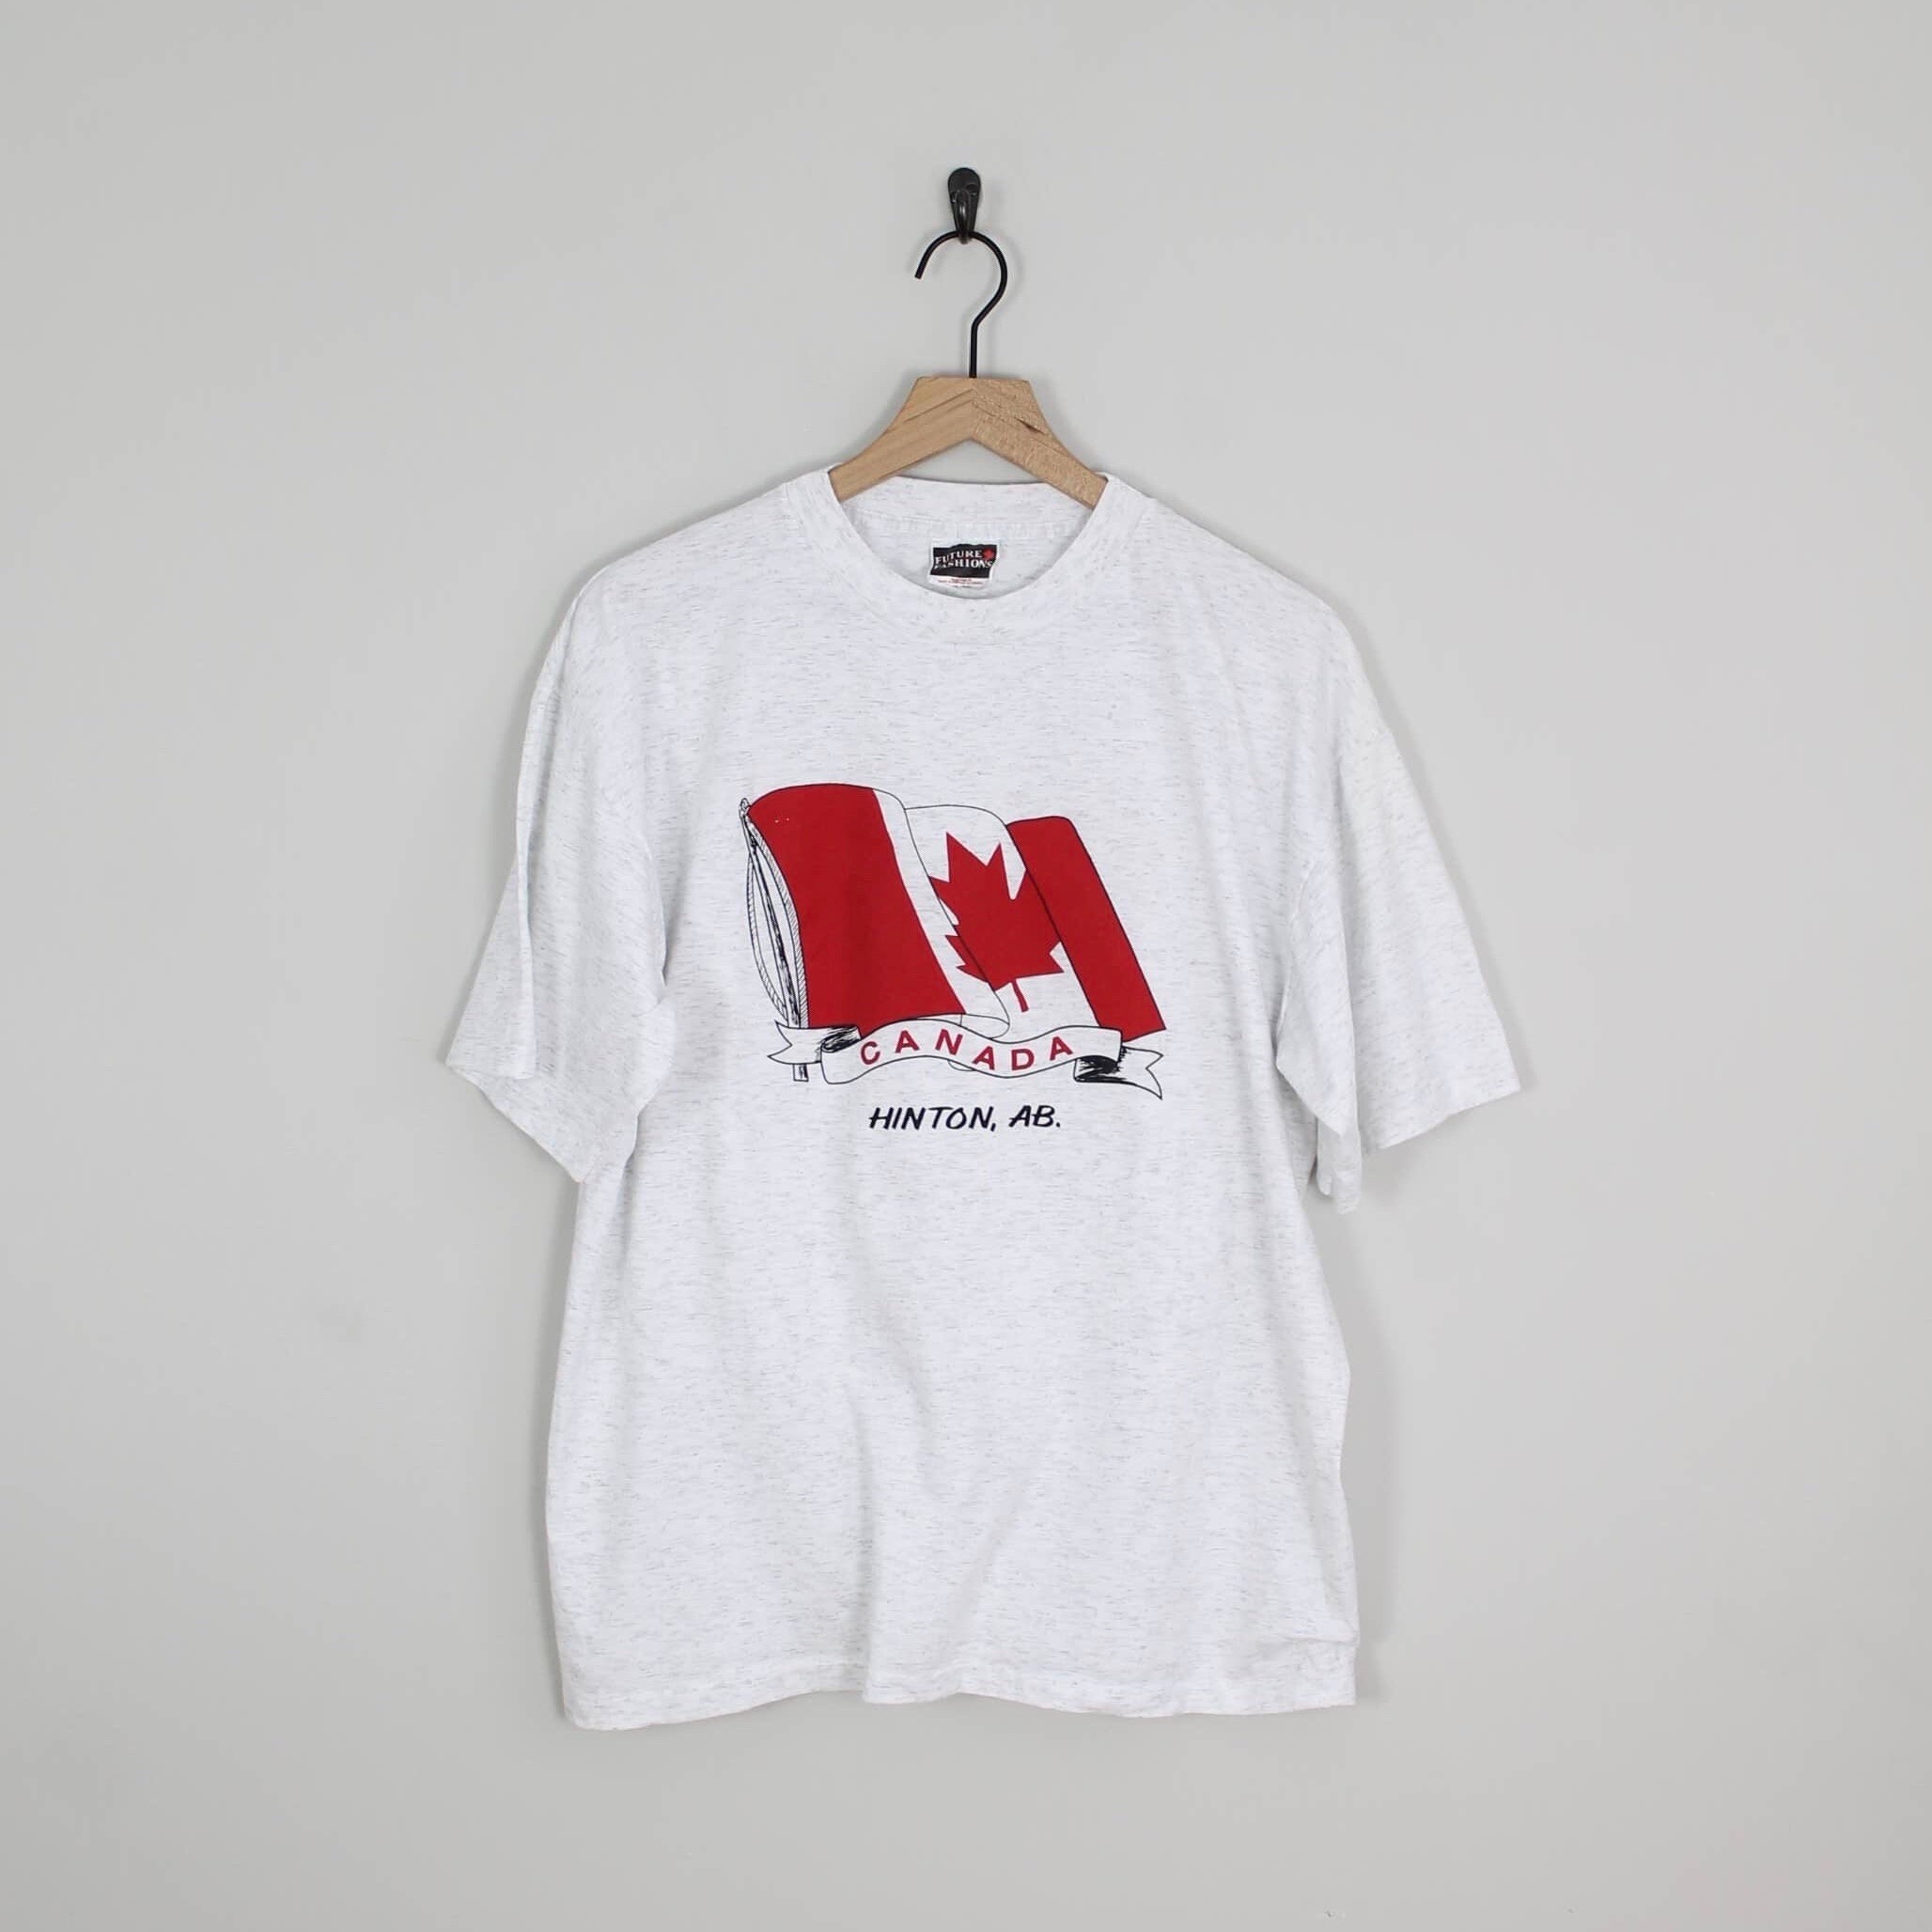 Retro Vintage Canada Flag T-Shirt